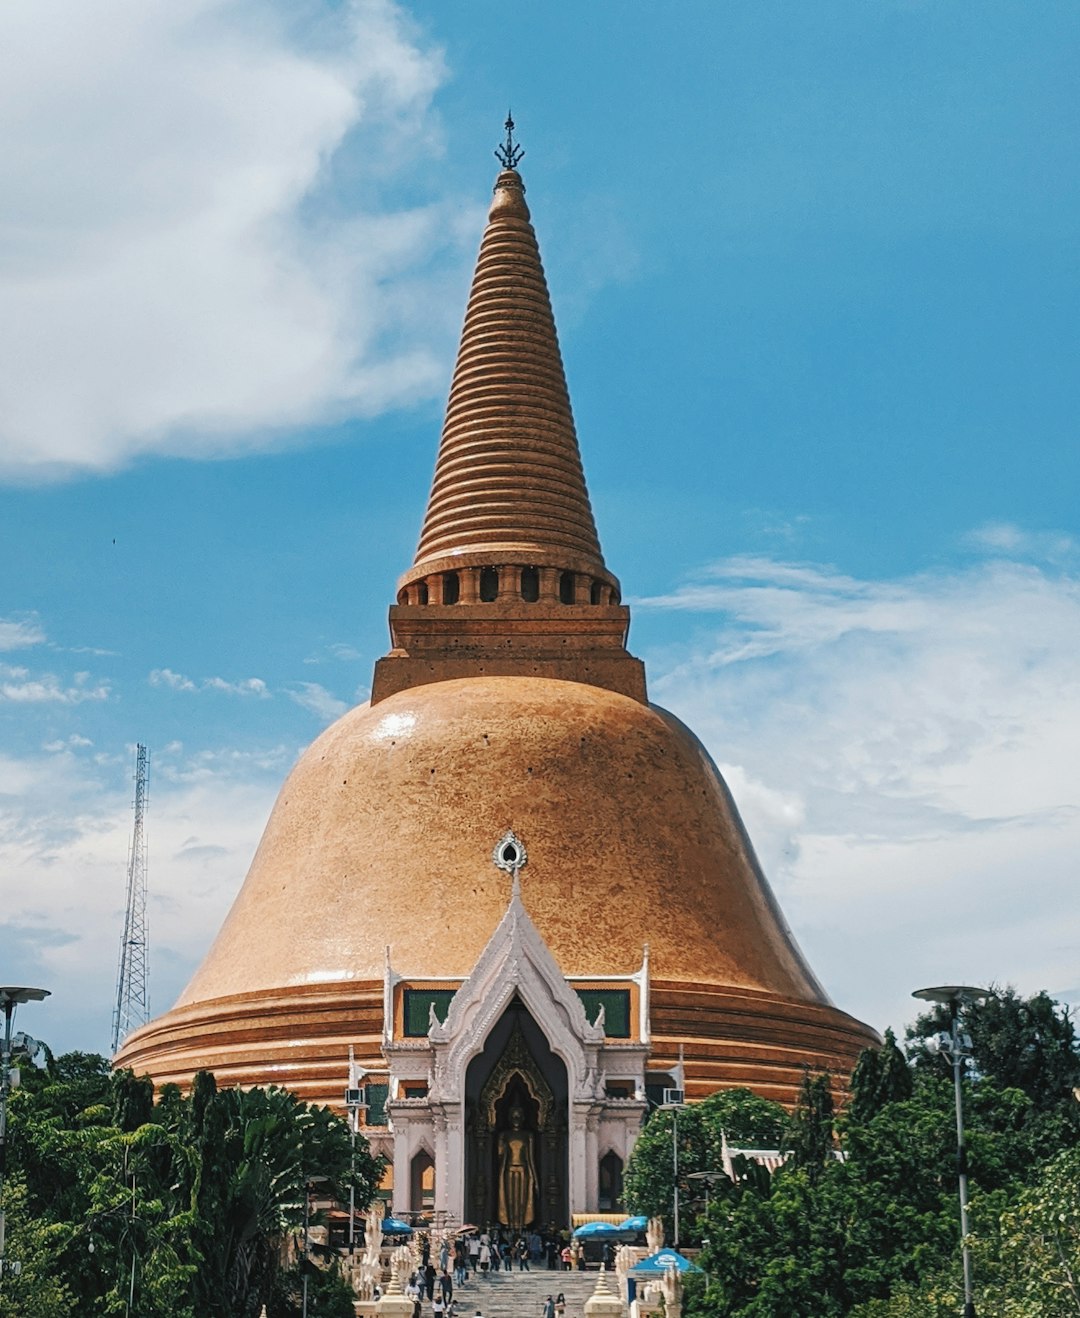 Place of worship photo spot Nakhon Pathom Wat Phra Chetuphon Vimolmangklararm Rajwaramahaviharn